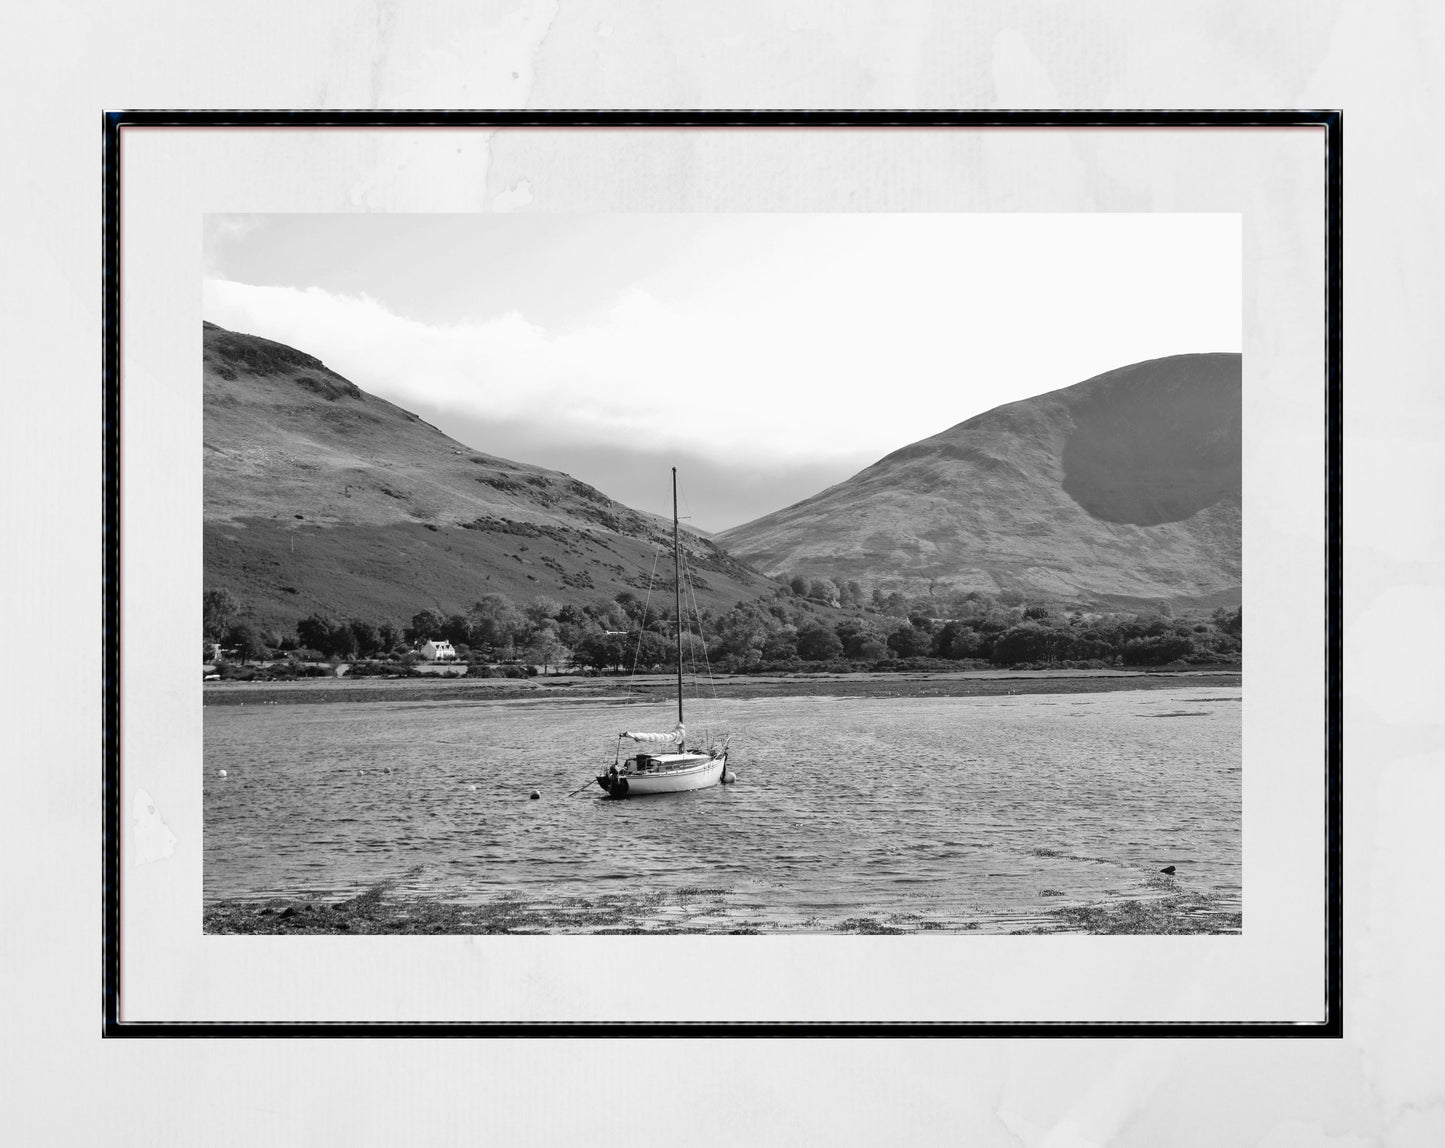 Isle of Arran Lochranza Scotland Landscape Black And White Photography Poster